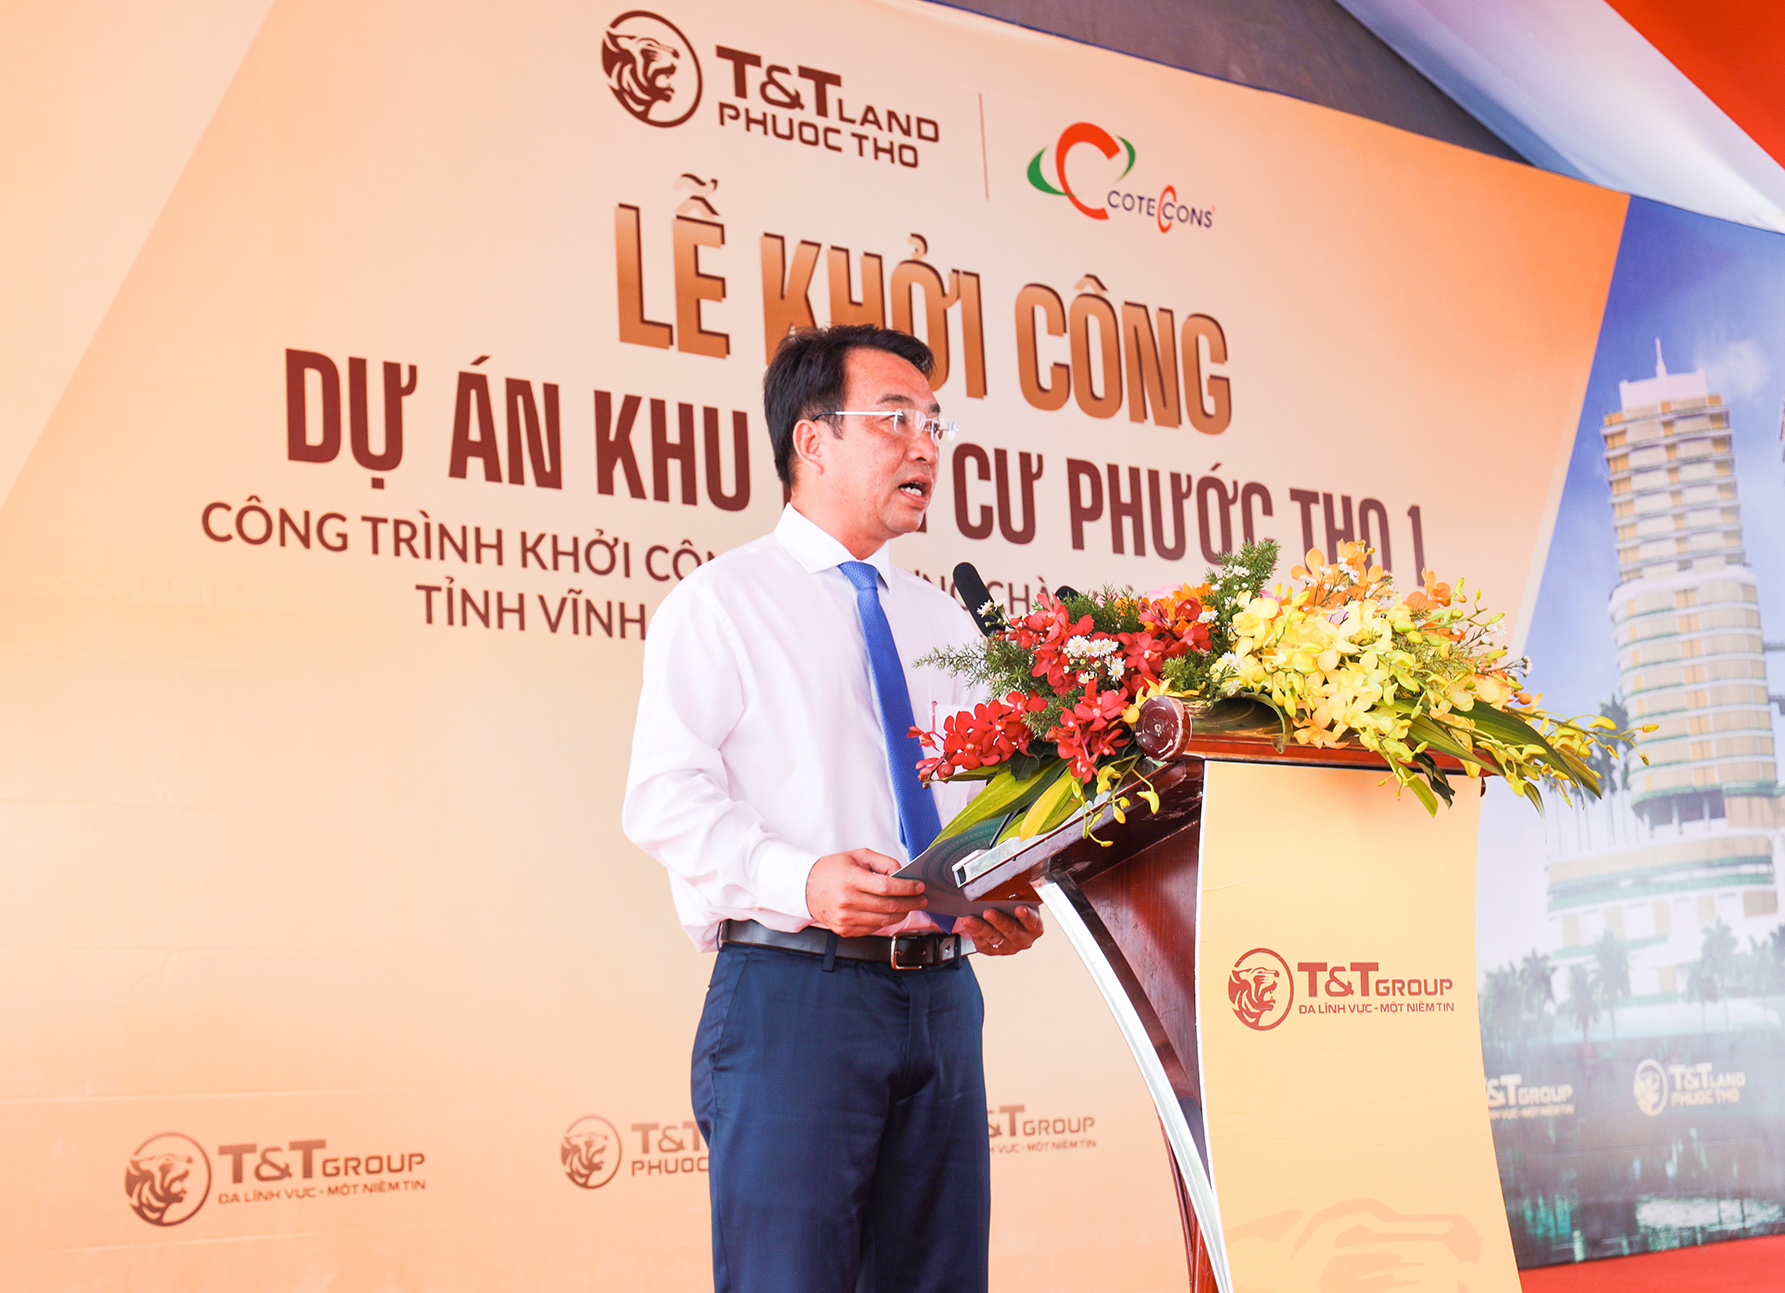 Ông Lữ Quang Ngời, Chủ tịch UBND tỉnh Vĩnh Long đánh giá cao sự lựa chọn của Tập đoàn T&T Group khi đầu tư vào dự án khu dân cư Phước Thọ tại TP. Vĩnh Long.